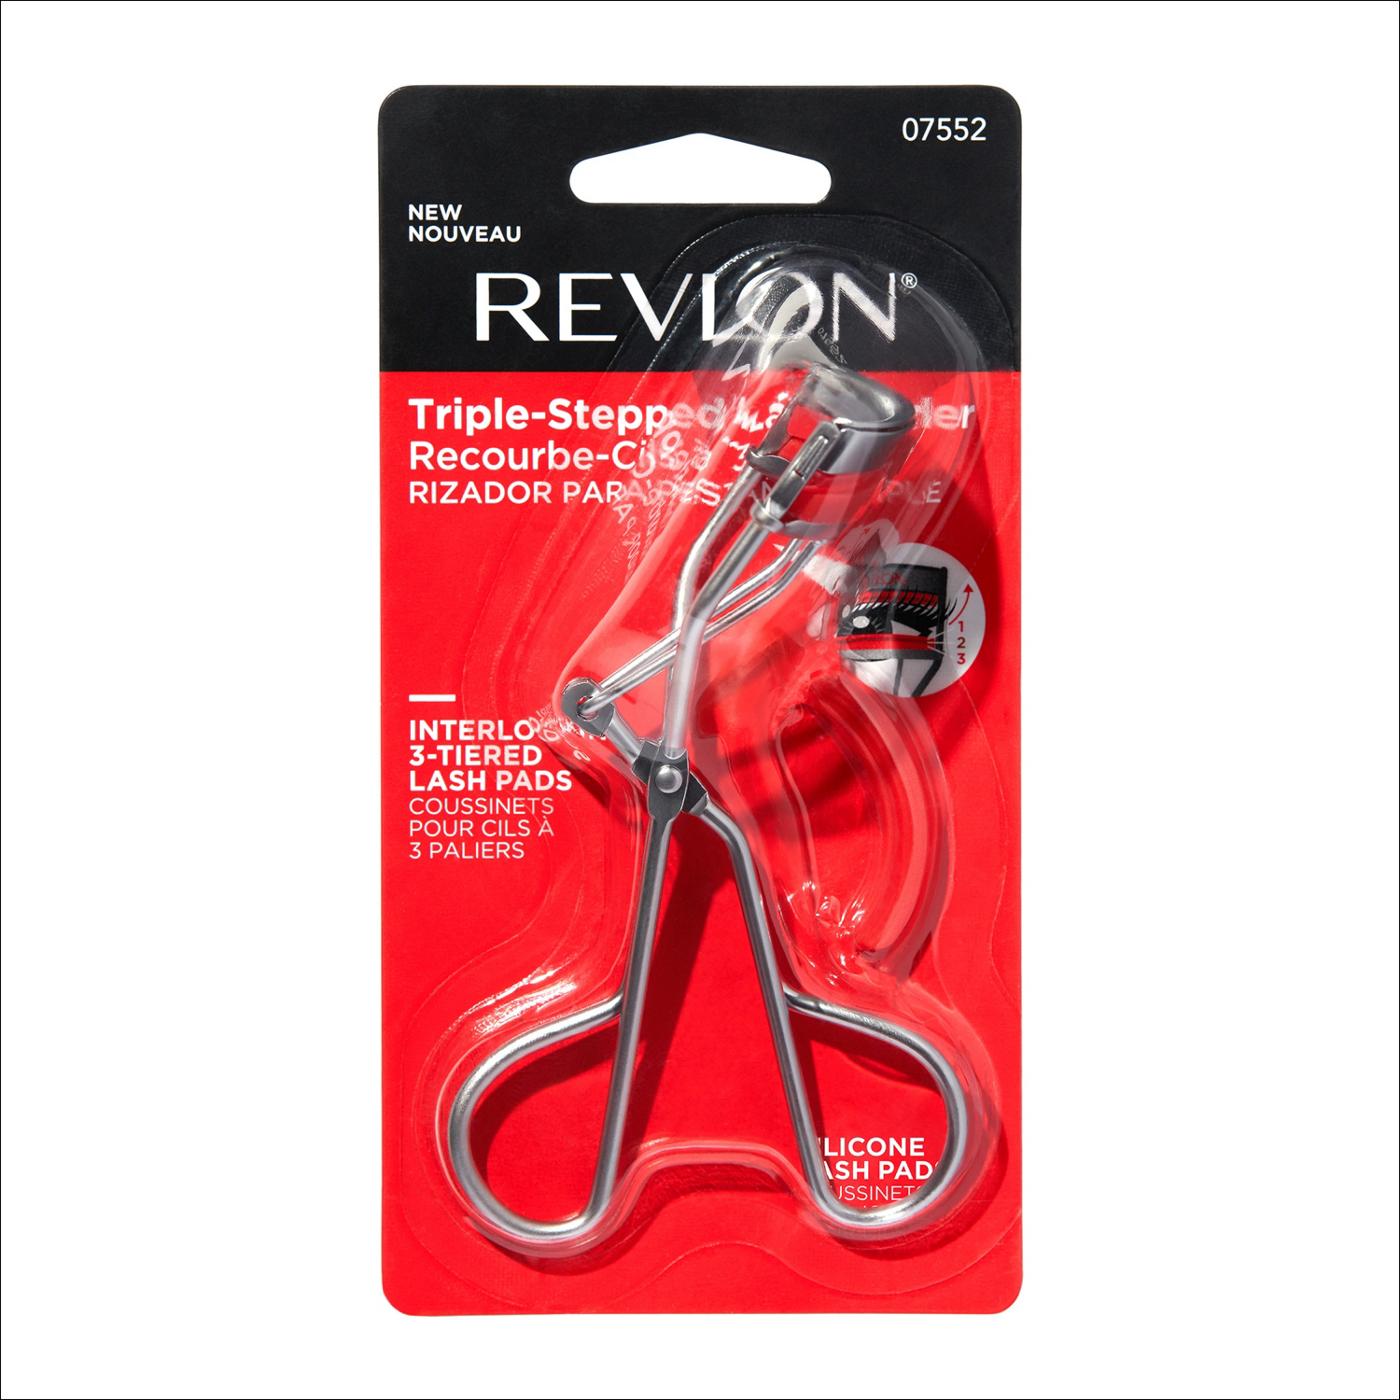 Revlon 3-step Lash Curler; image 1 of 6